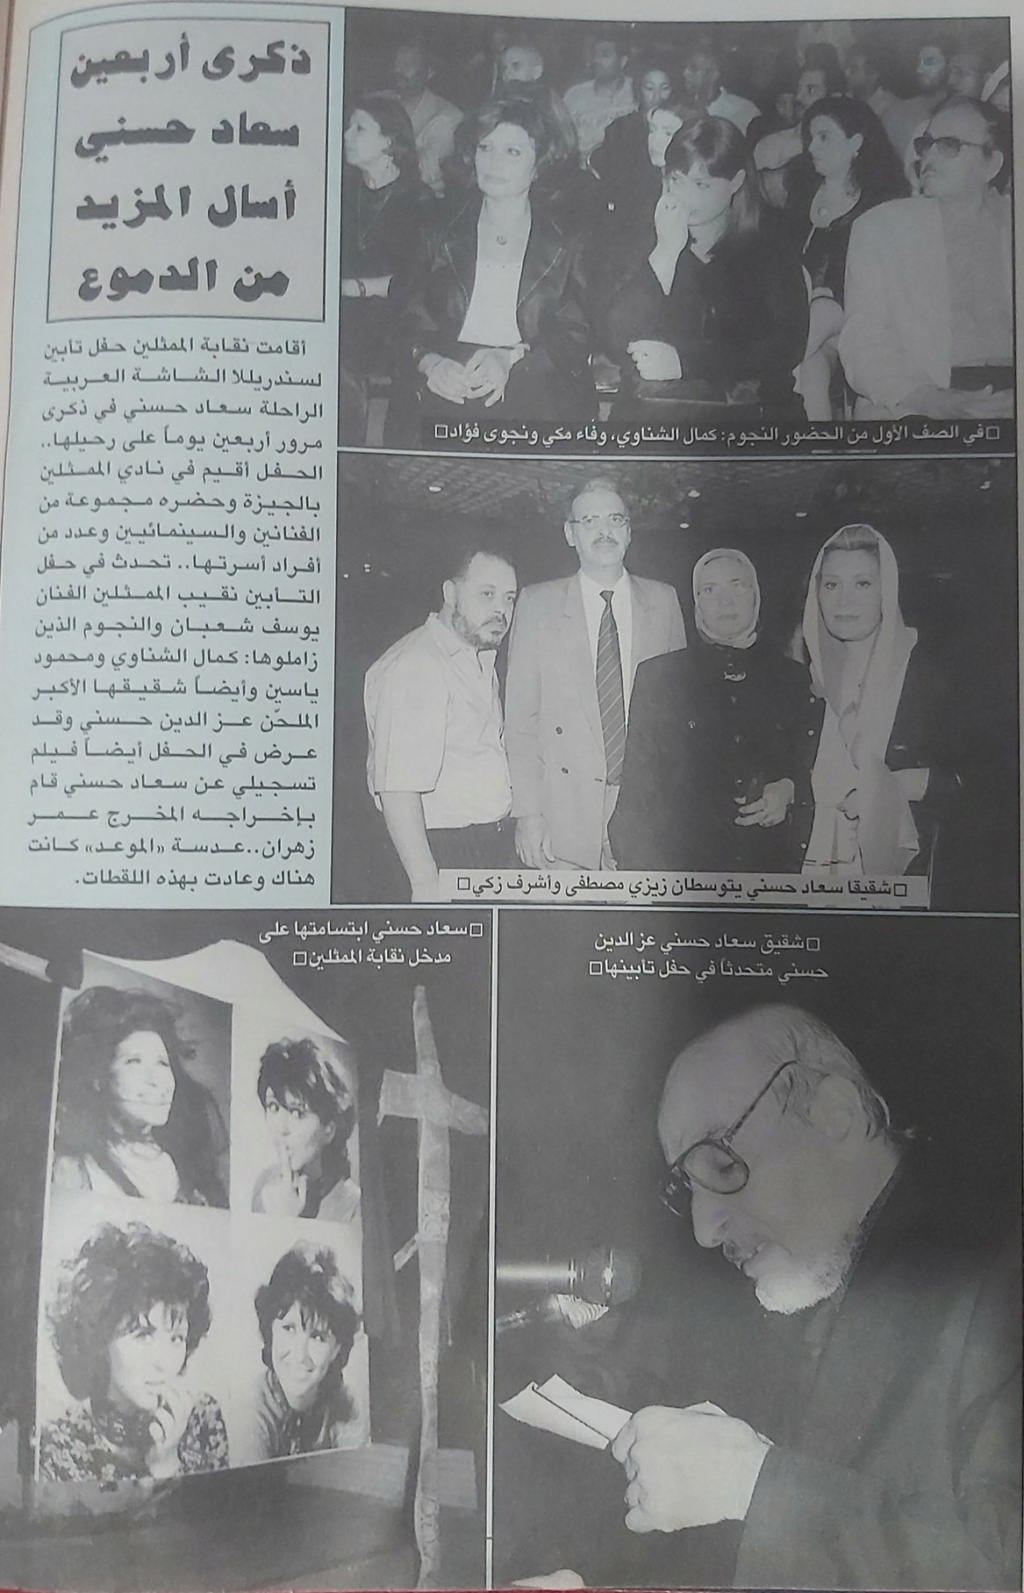 حسني - خبر صحفي : ذكرى أربعين سعاد حسني أسال المزيد من الدموع 2001 م Ao_eoo10